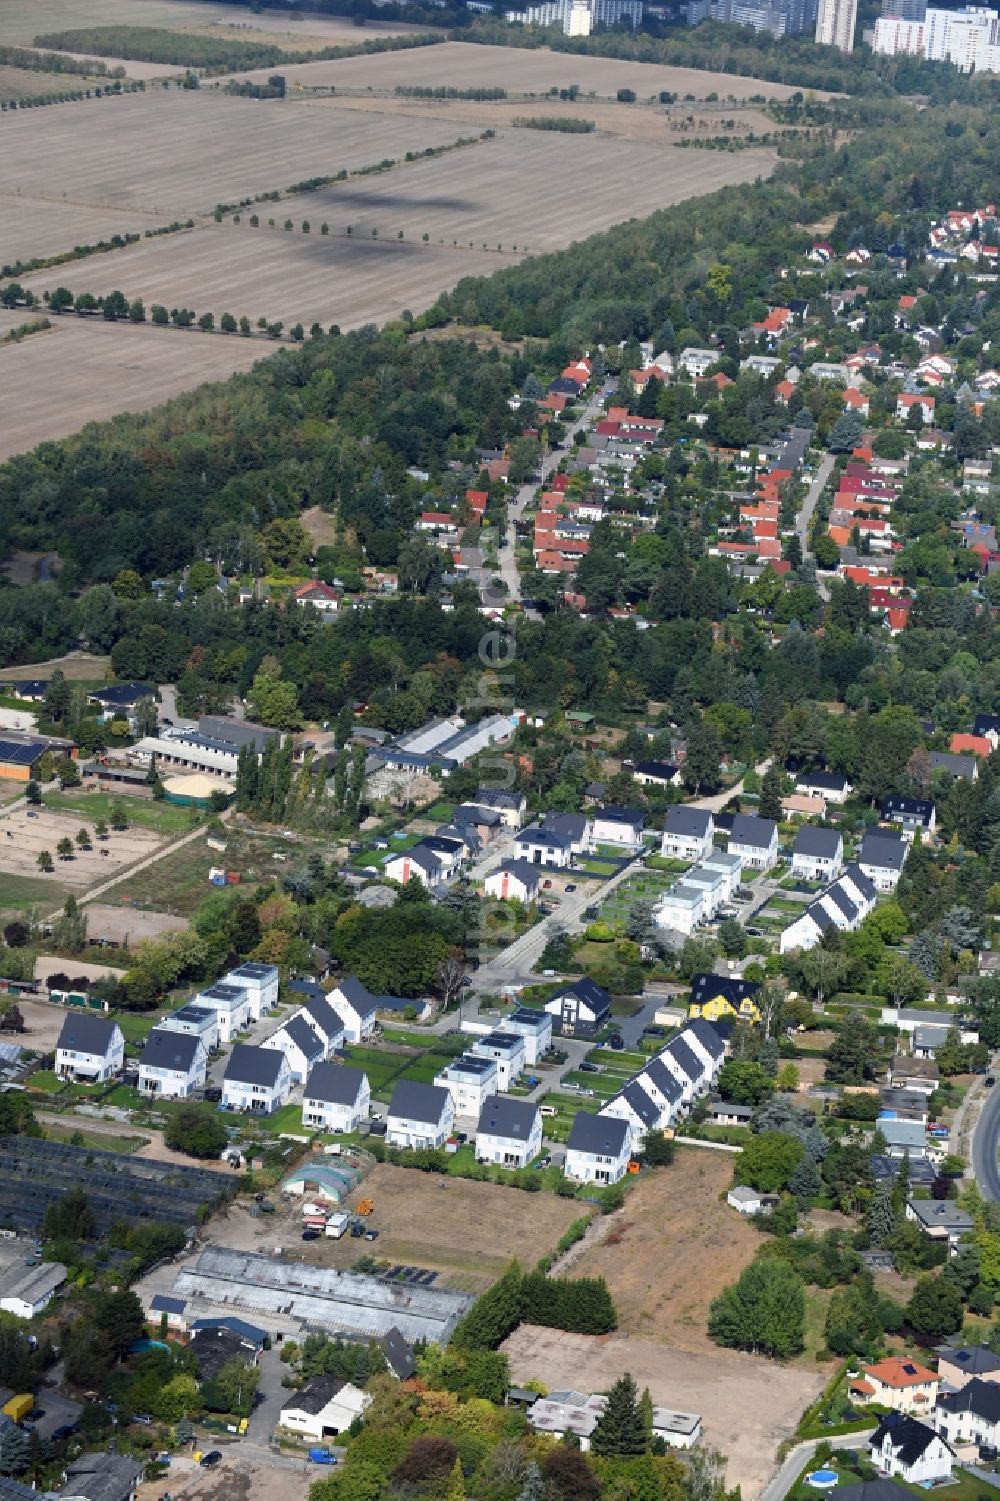 Berlin von oben - Wohngebiet einer Einfamilienhaus- Siedlung an der Pfauenkehre im Ortsteil Rudow in Berlin, Deutschland